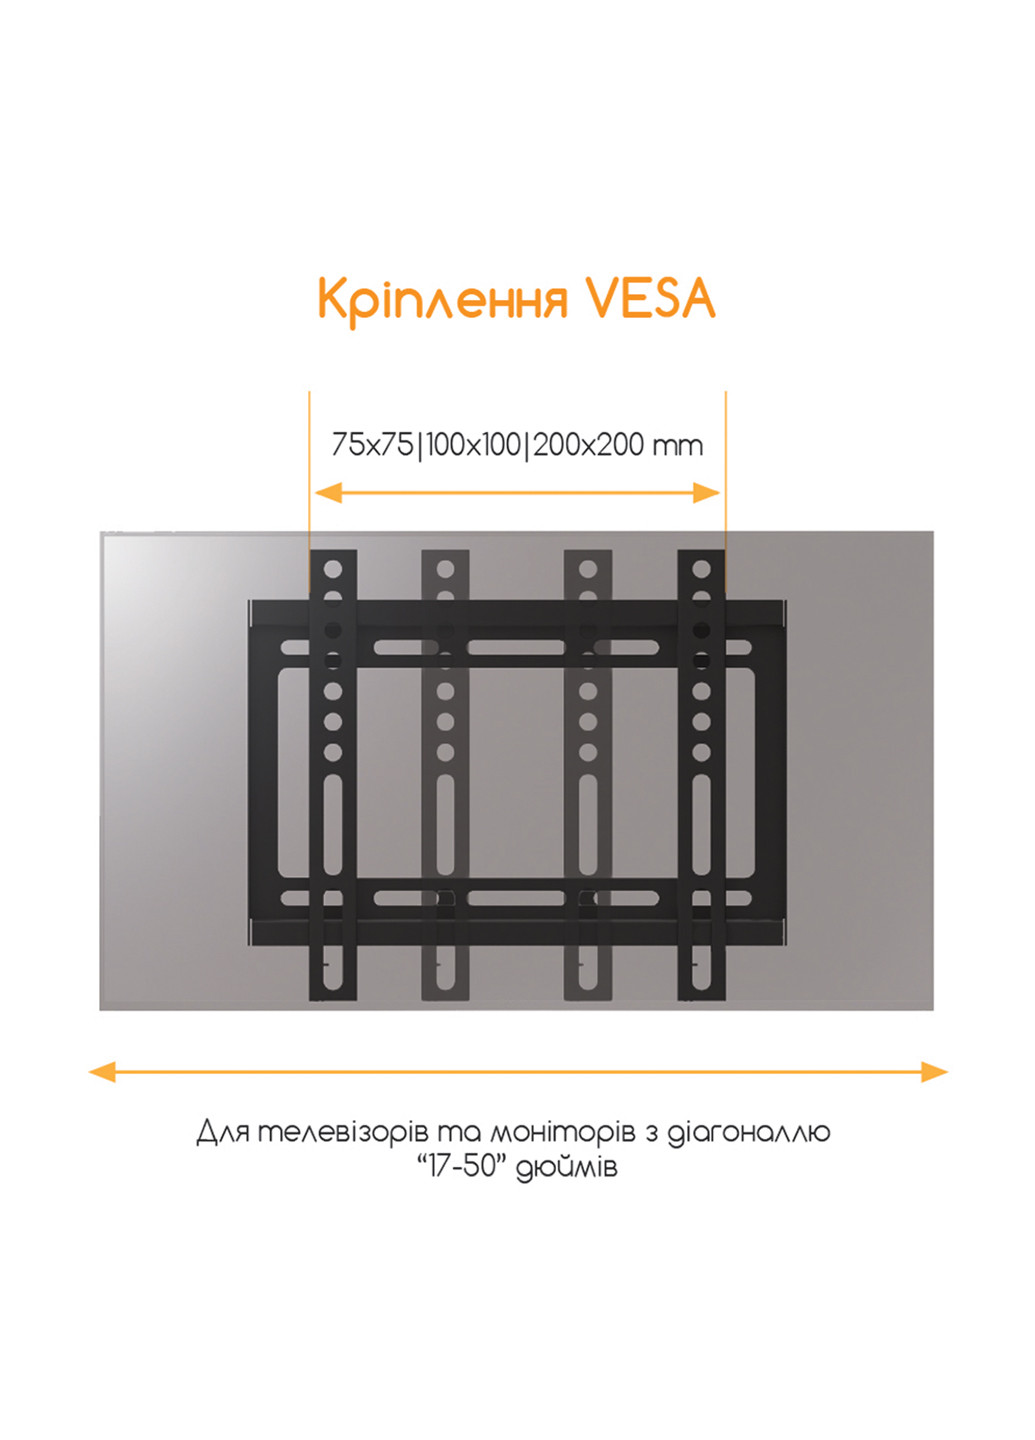 Крепление для ТВ и мониторов Piko ptv-f20t (129541399)